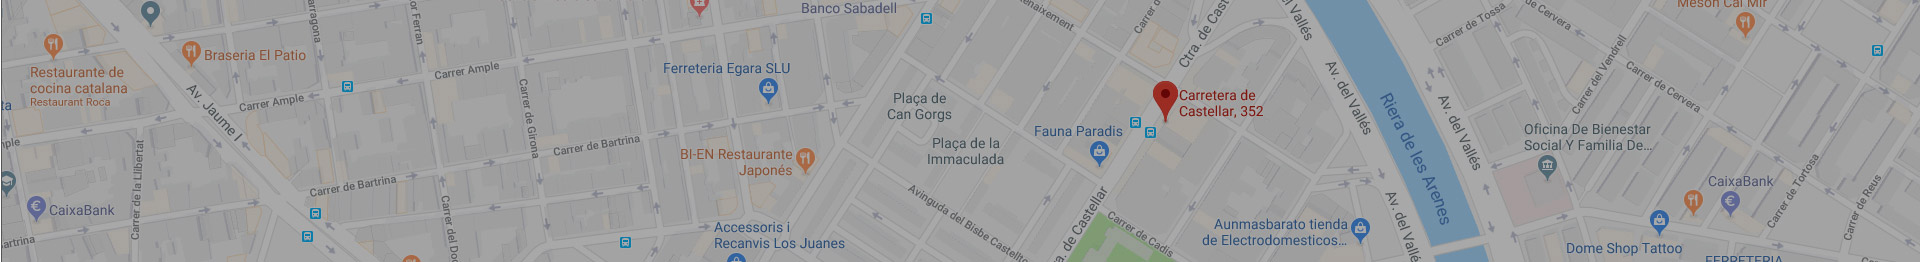 Ver en Google Maps nuestra sede en TERRASSA